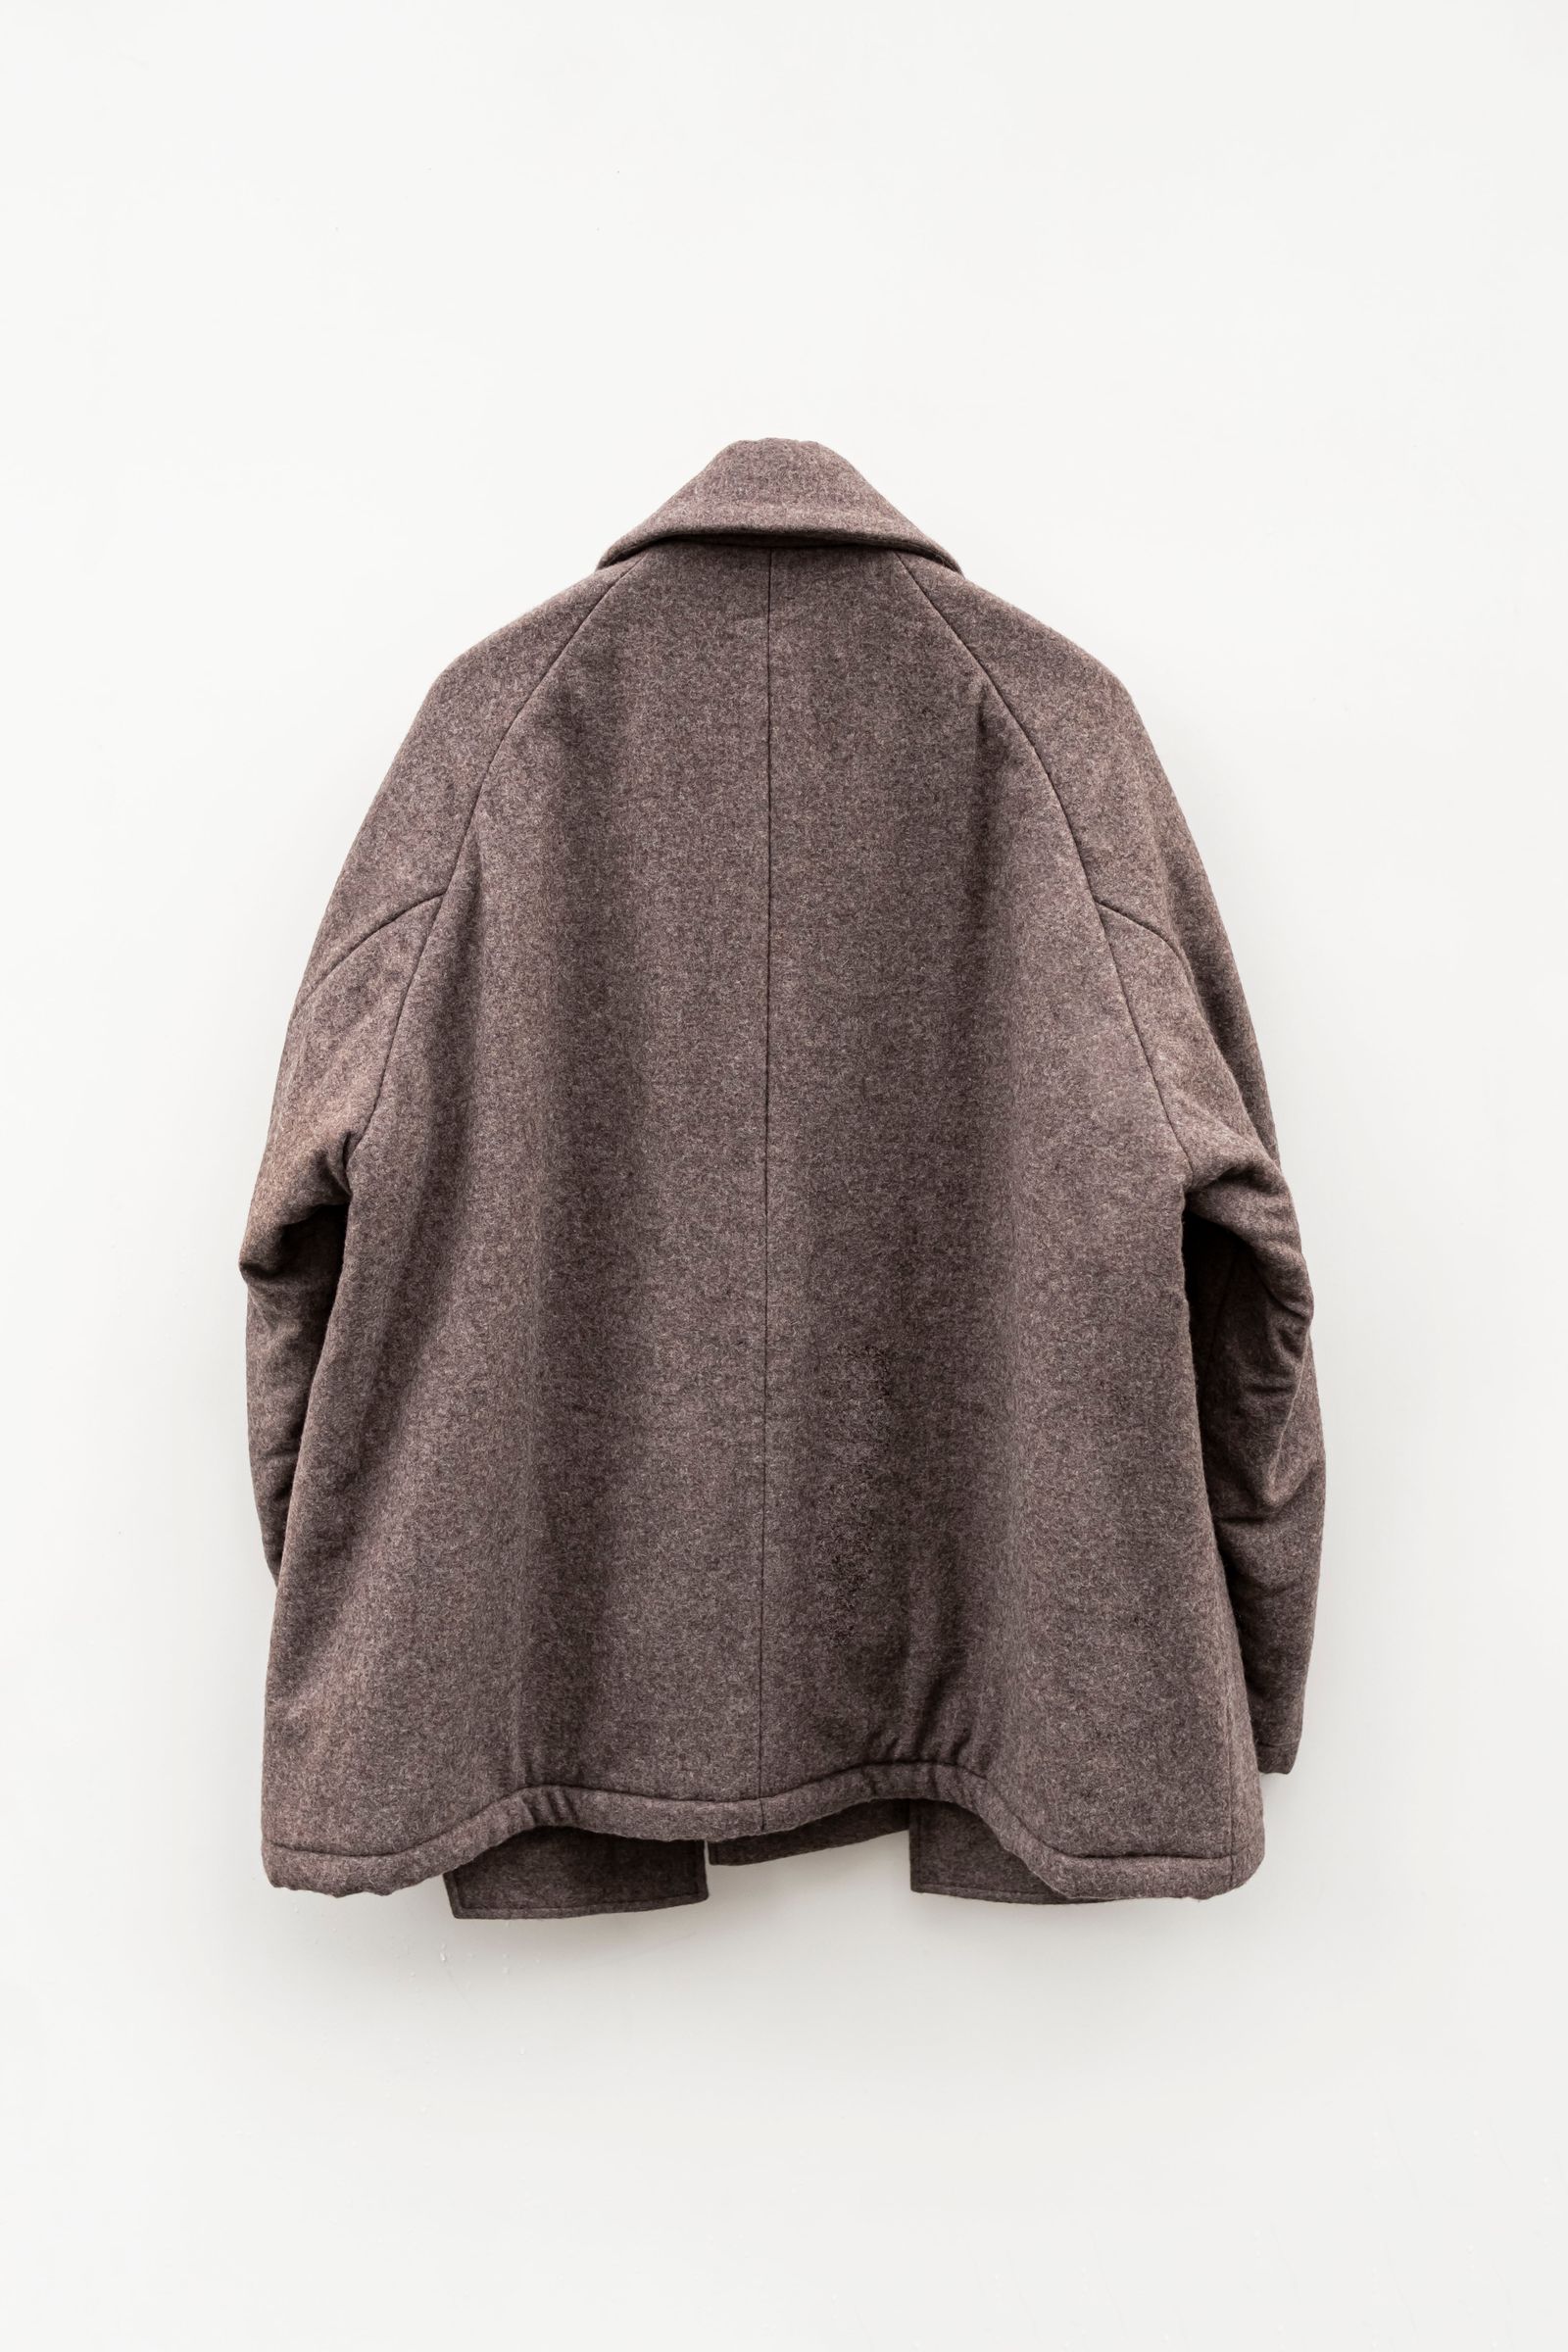 Blanc YM 21aw Wool Pile Balmacaan coat - 通販 - gofukuyasan.com